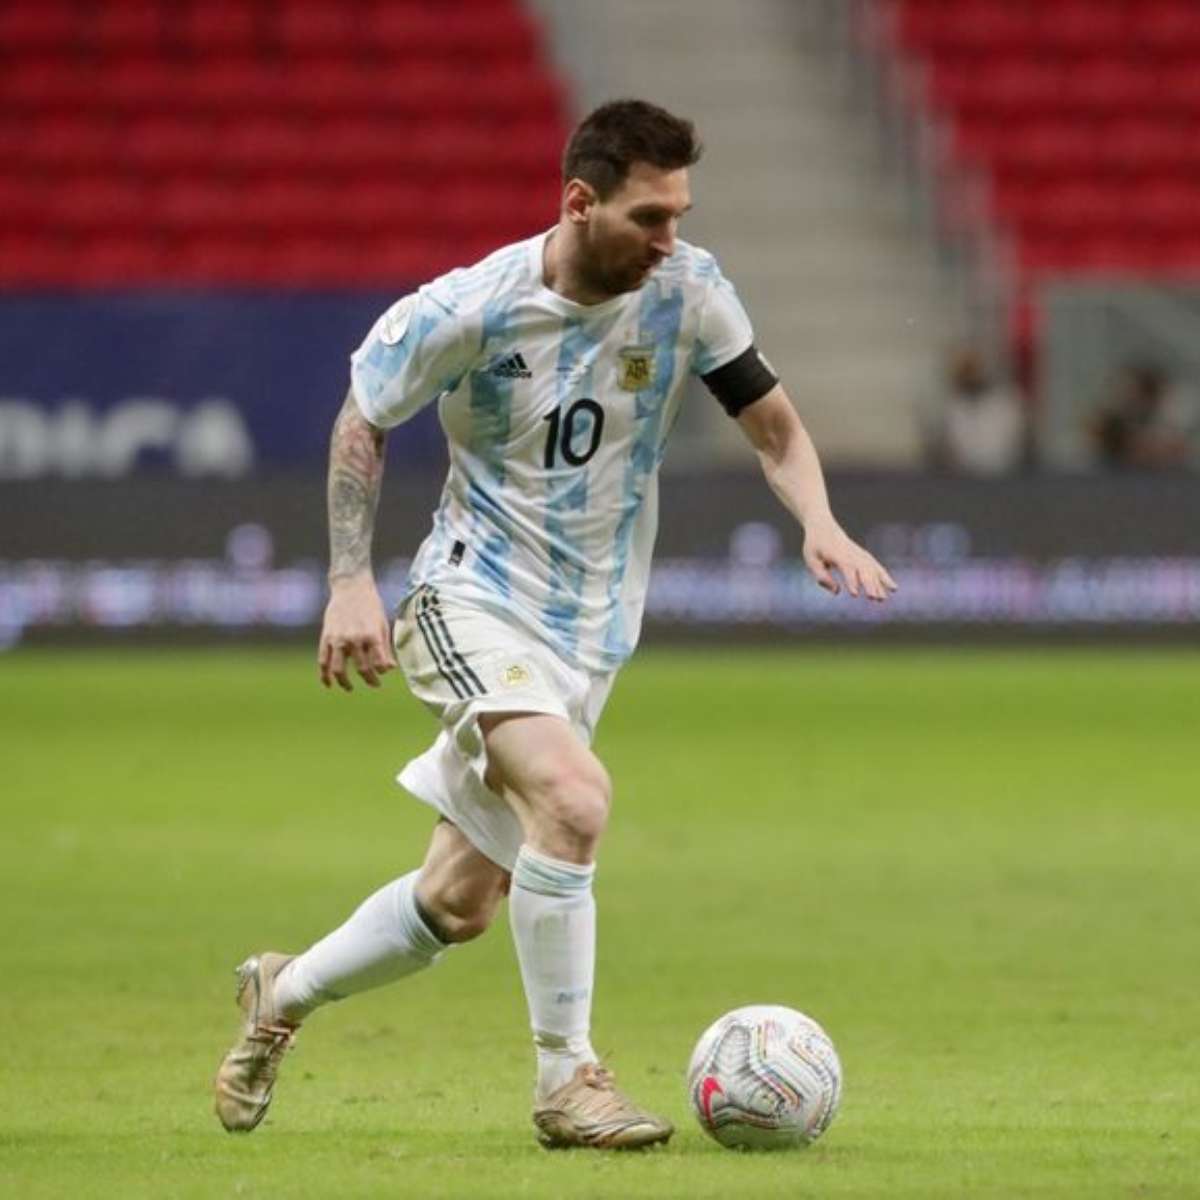 Atrás de Lionel Messi, Rojas é o segundo jogador com mais gols de fora da  areá na temporada